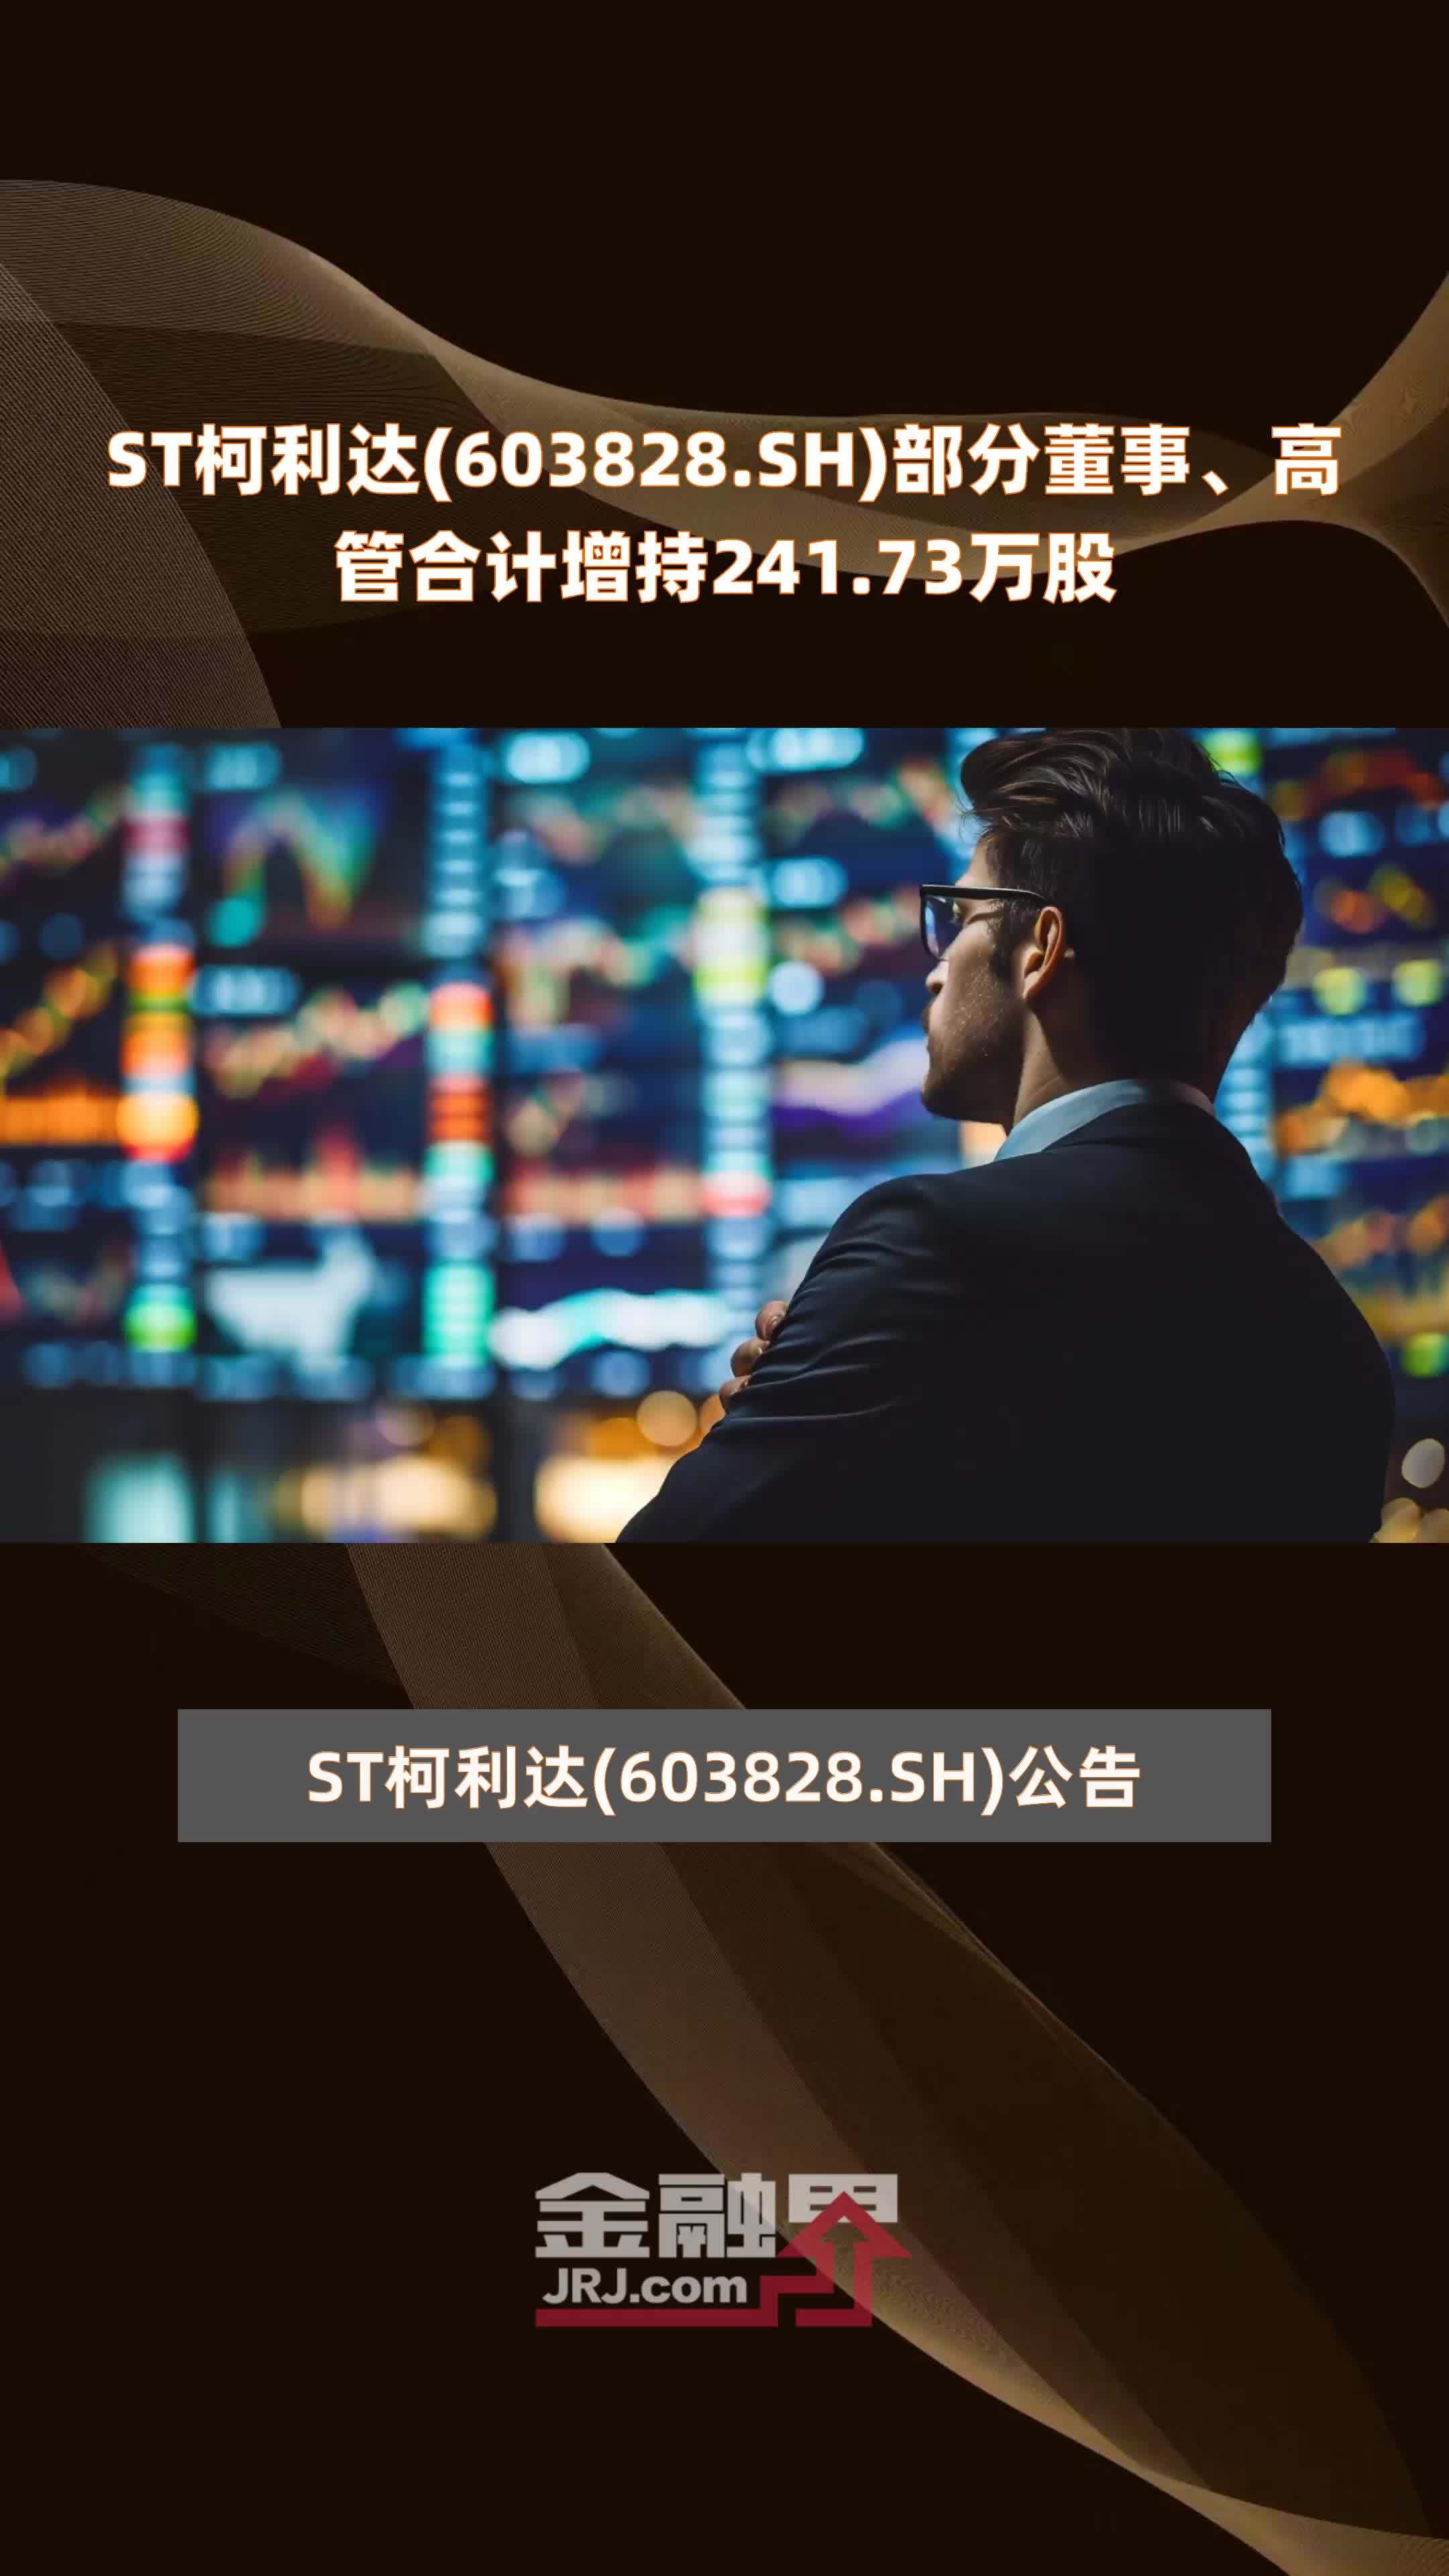 ST柯利达(603828.SH)部分董事、高管合计增持241.73万股 |快报